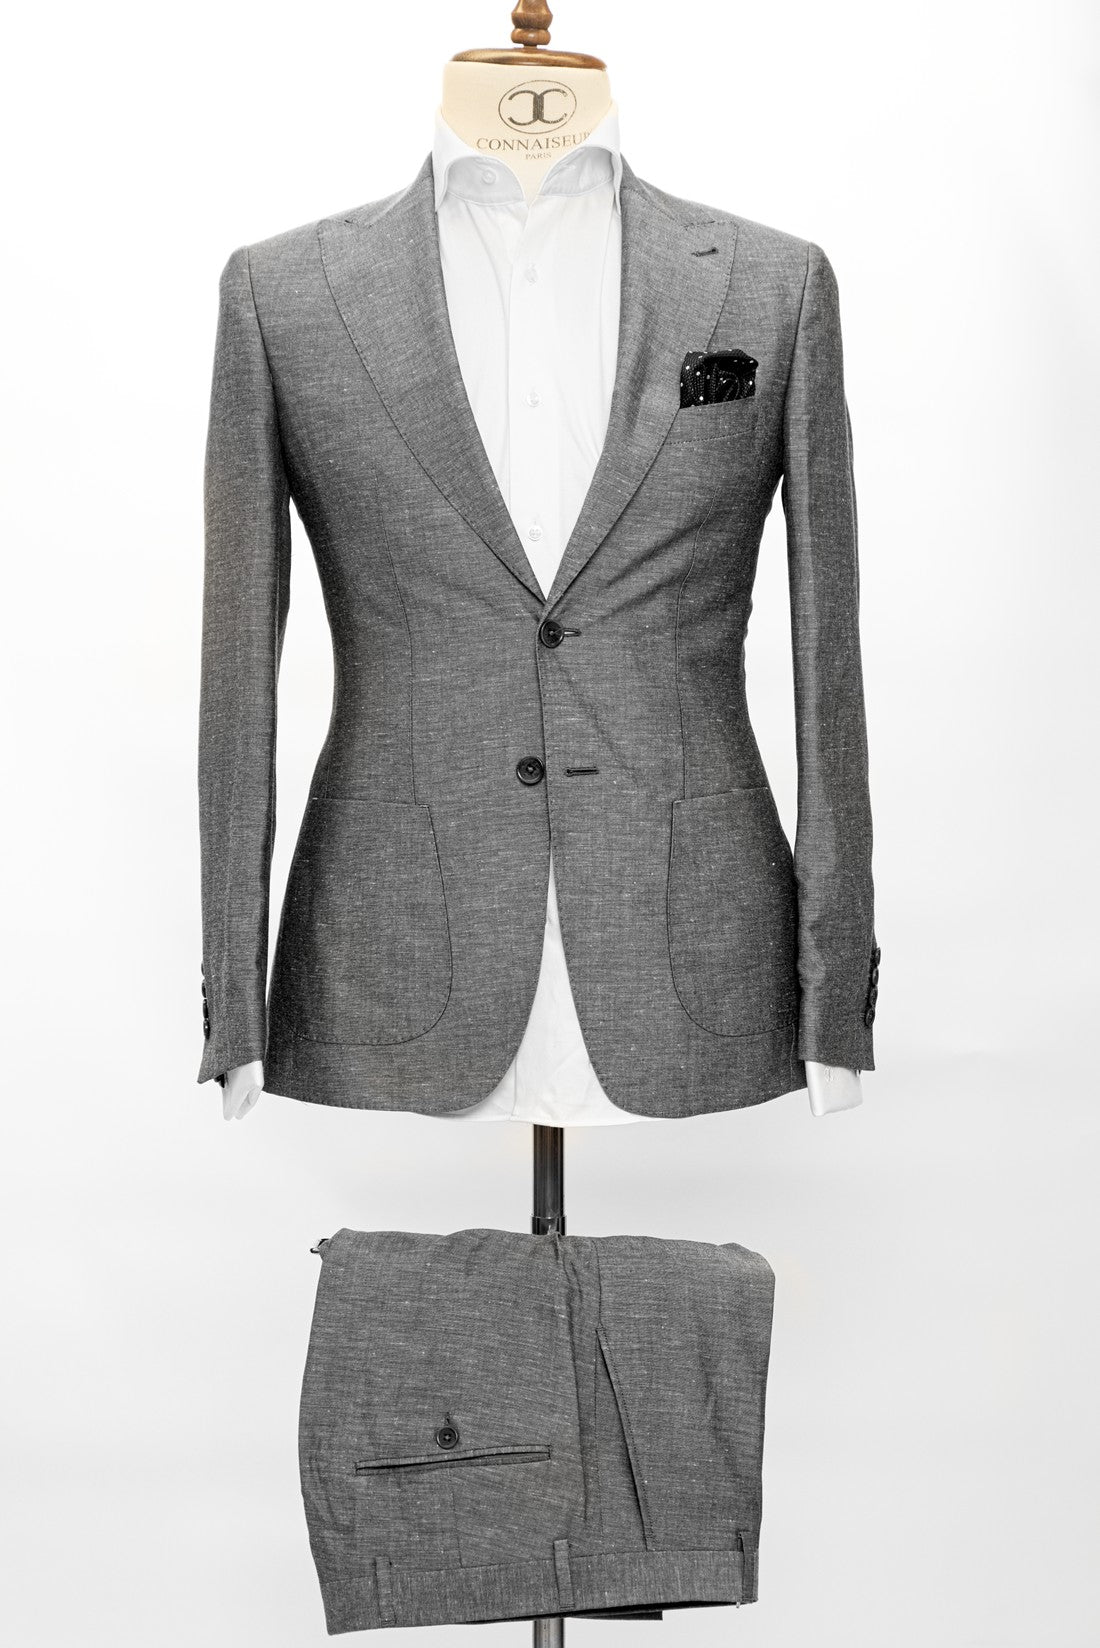 Connaisseur Paris - Grey 2 Piece Slim Fit Linen Suit with Patch Pockets